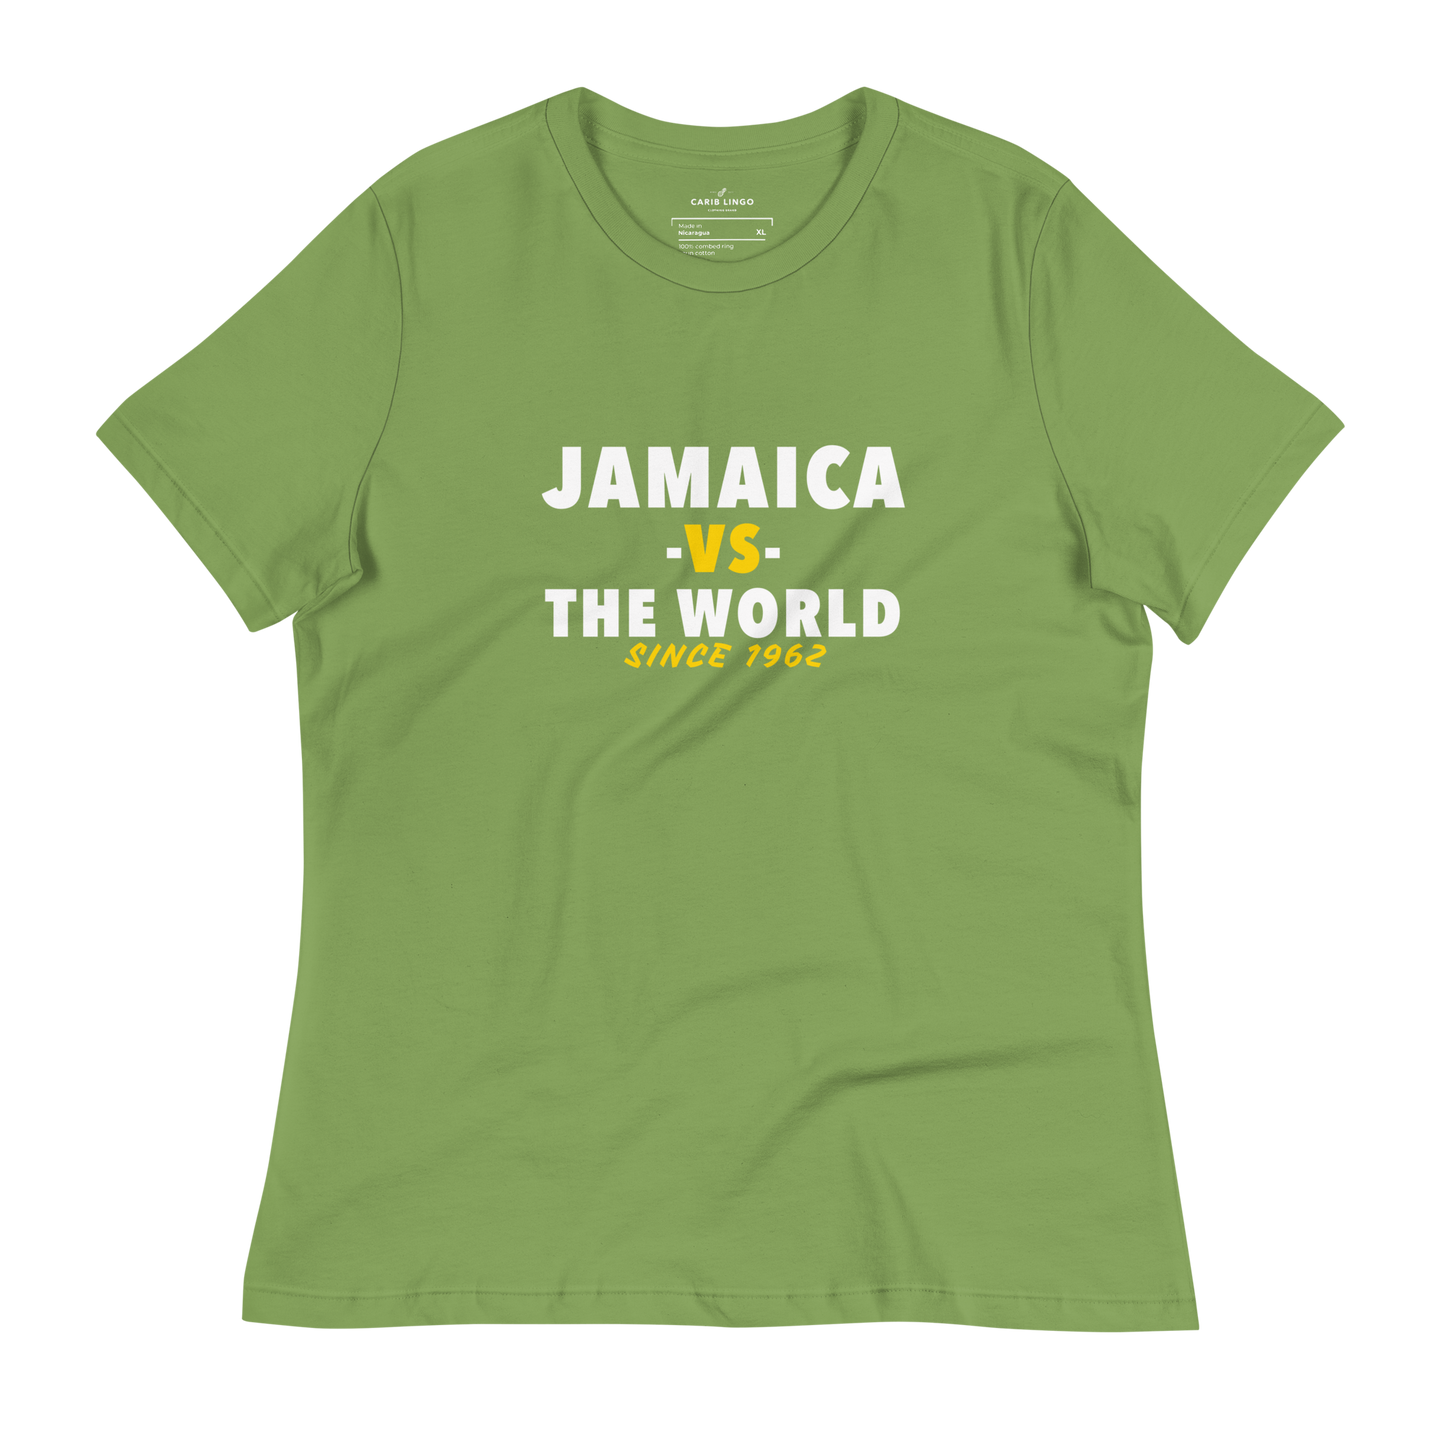 Jamaica -vs- The World Women's t-shirt